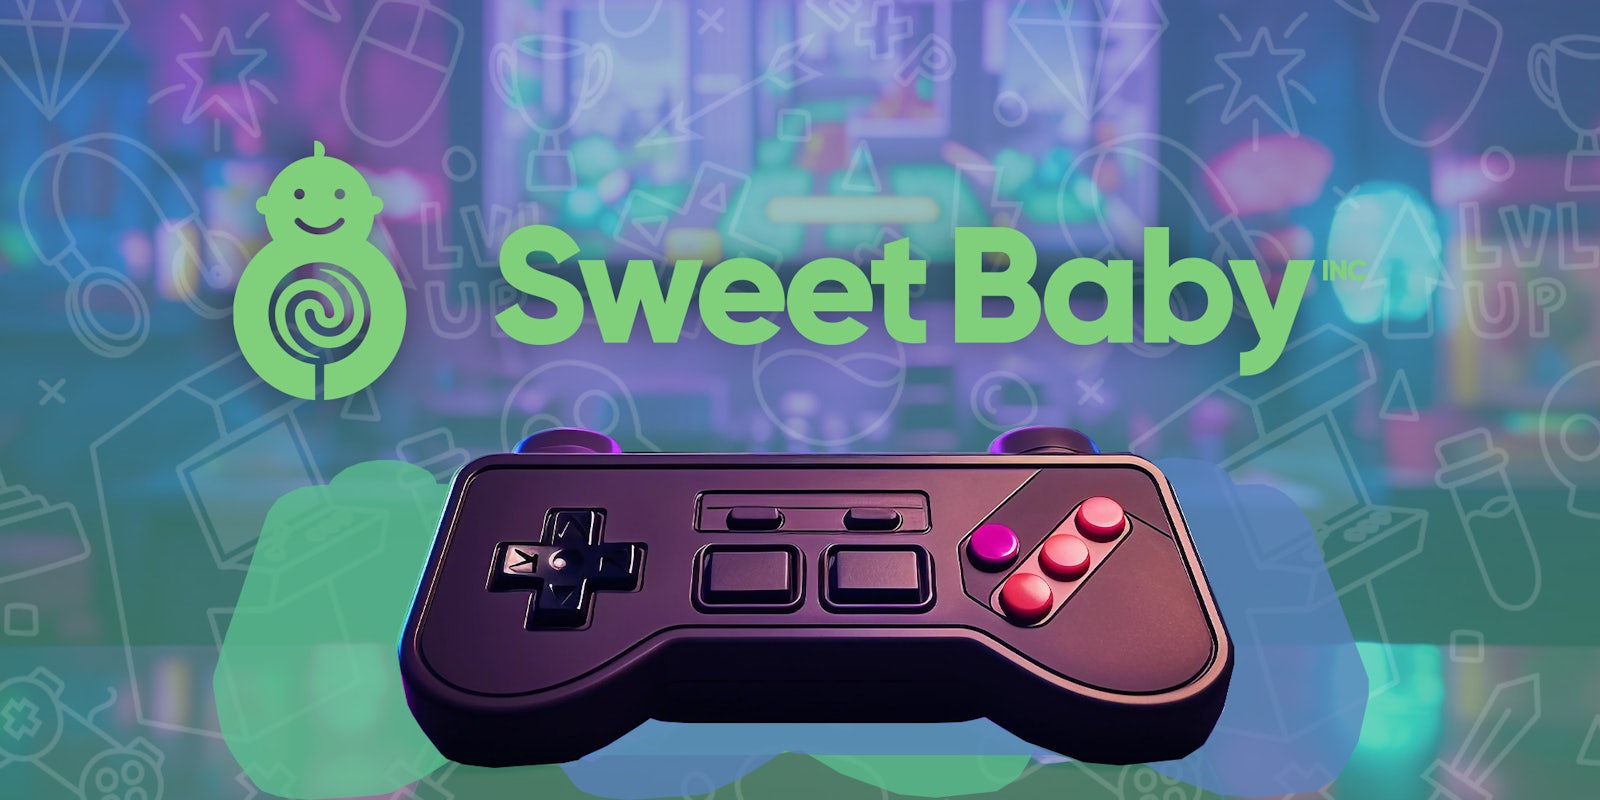 sweet baby inc logo next to gaming controller